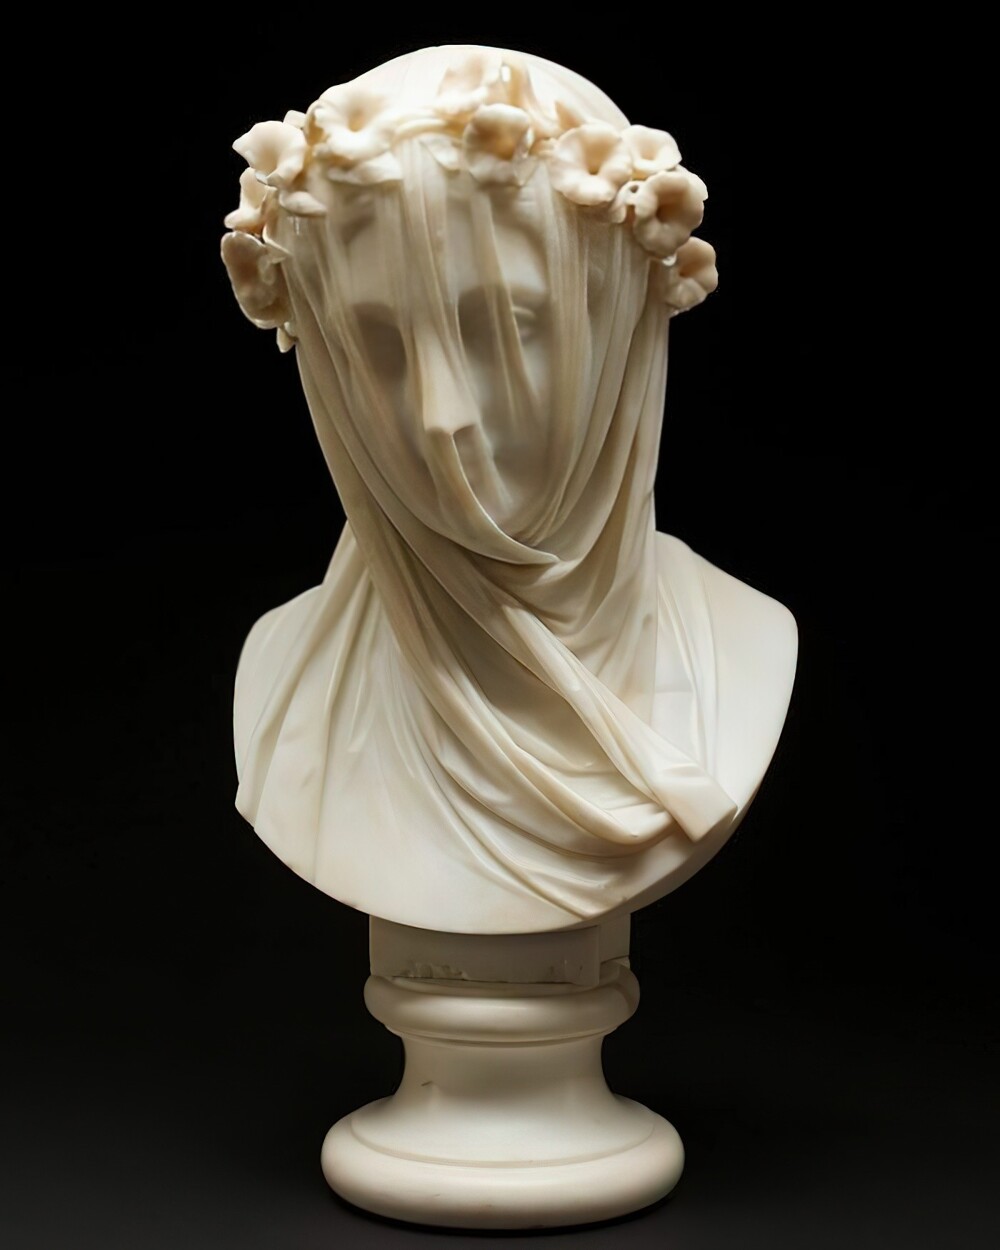 2. Мраморный бюст «Дама под вуалью», Рафаэло Монти, 1860 г.